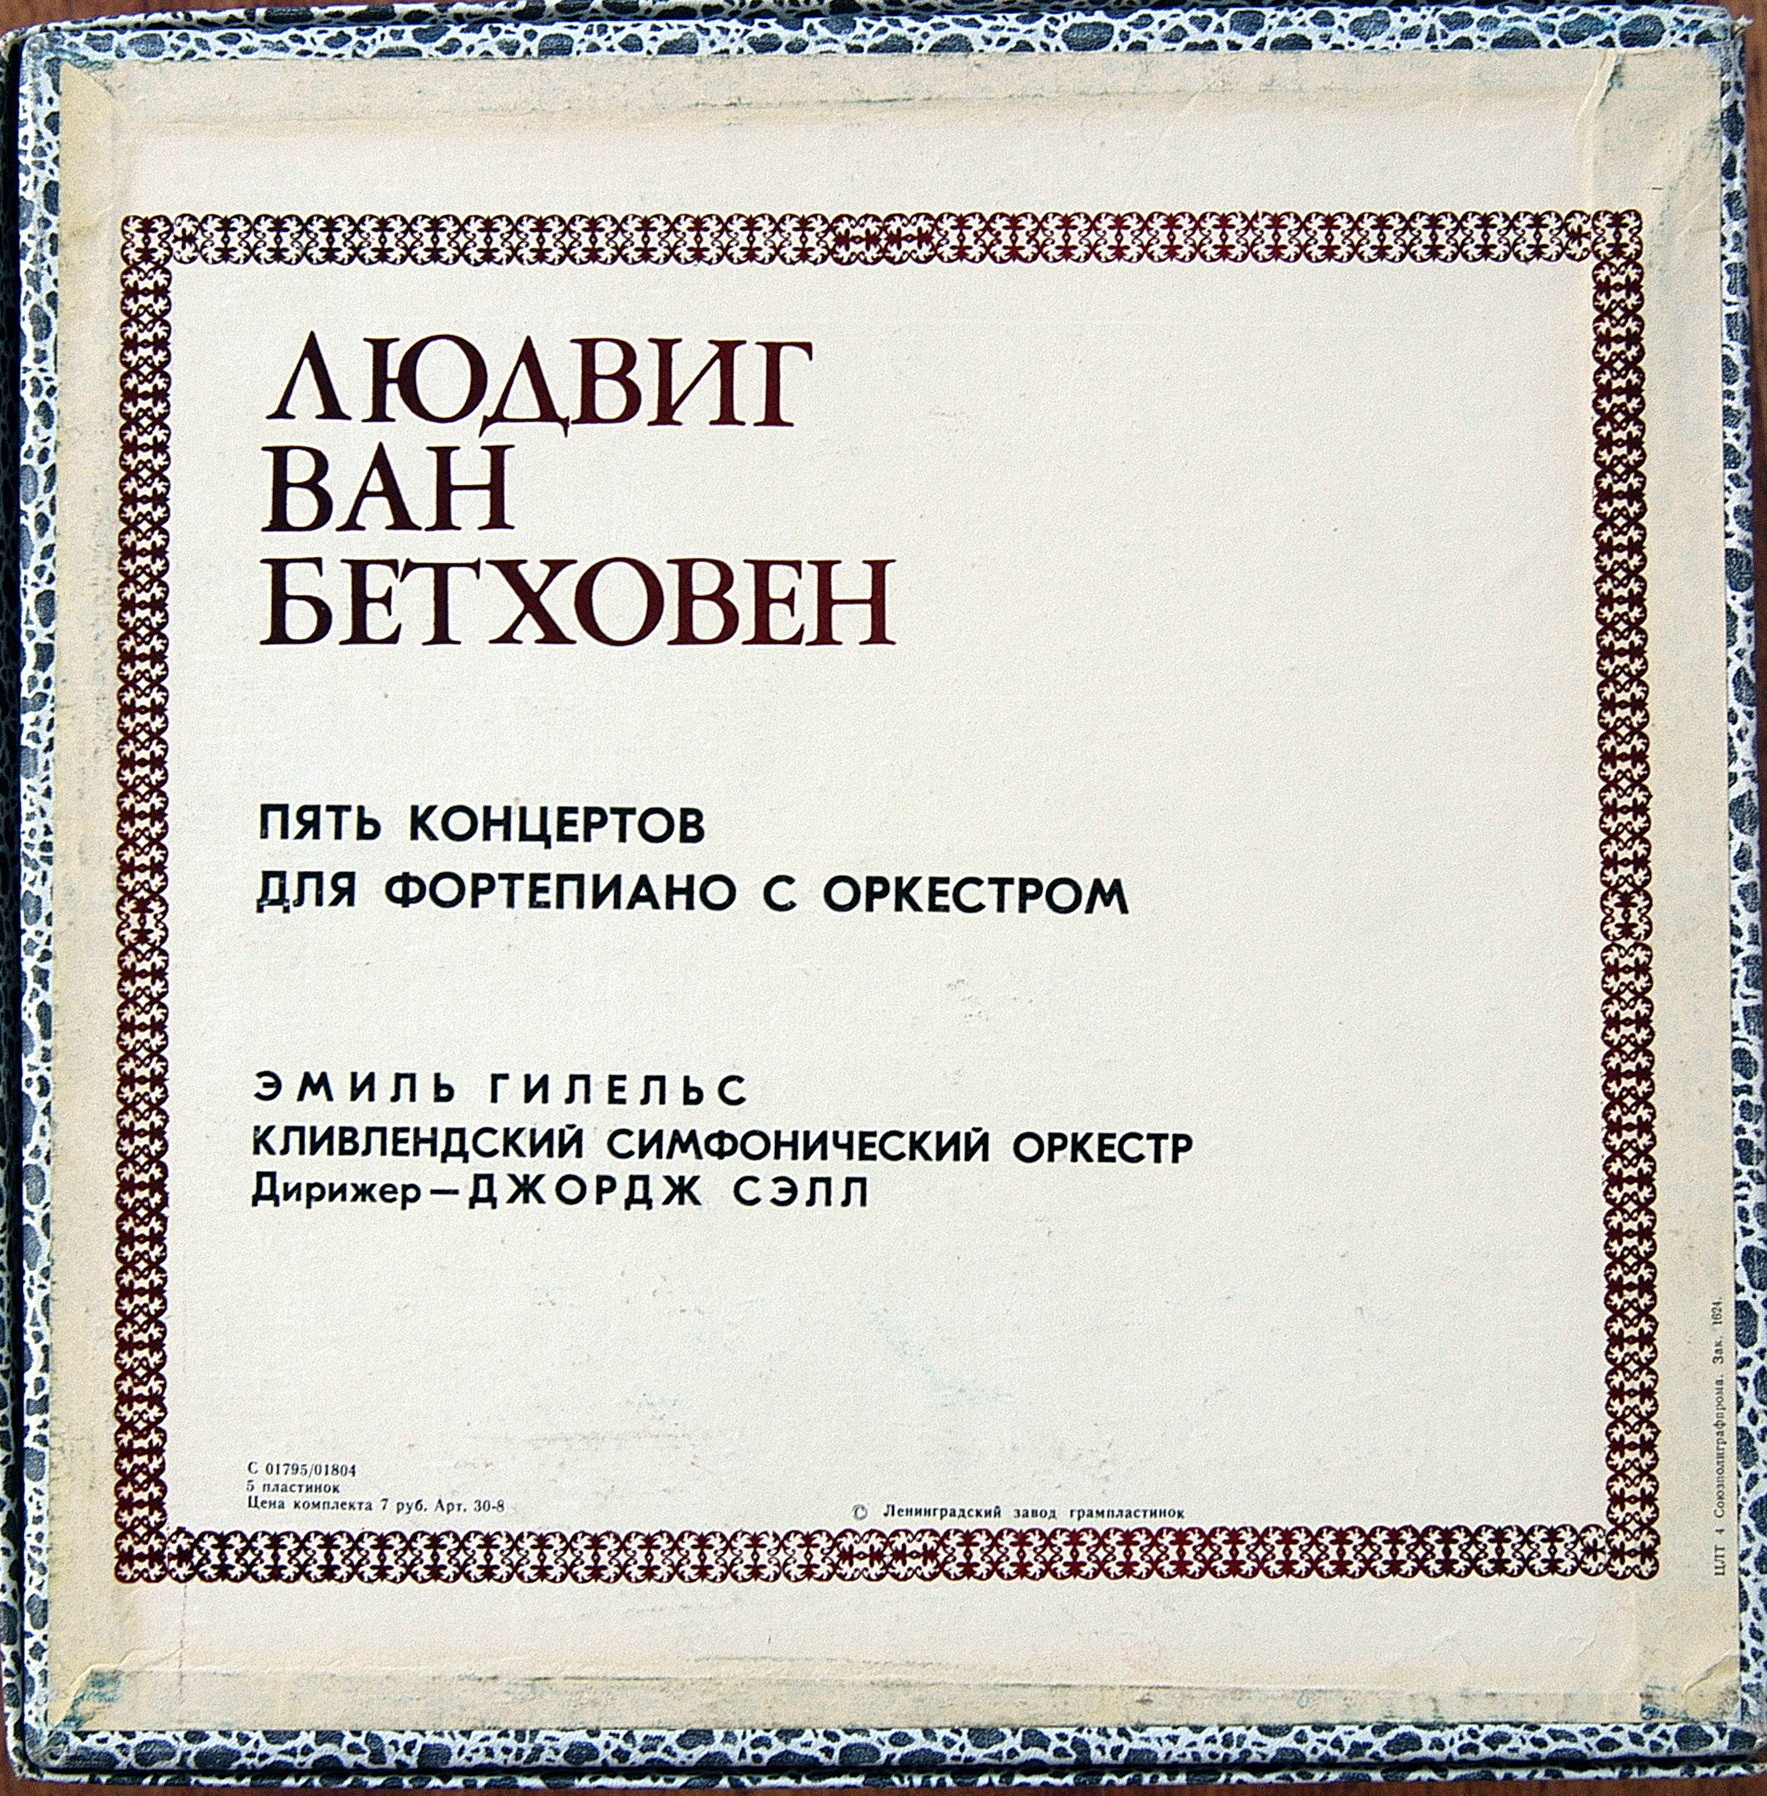 Л. Бетховен: Концерты №№ 1-5 для ф-но с оркестром (Э. Гилельс, Дж. Сэлл)